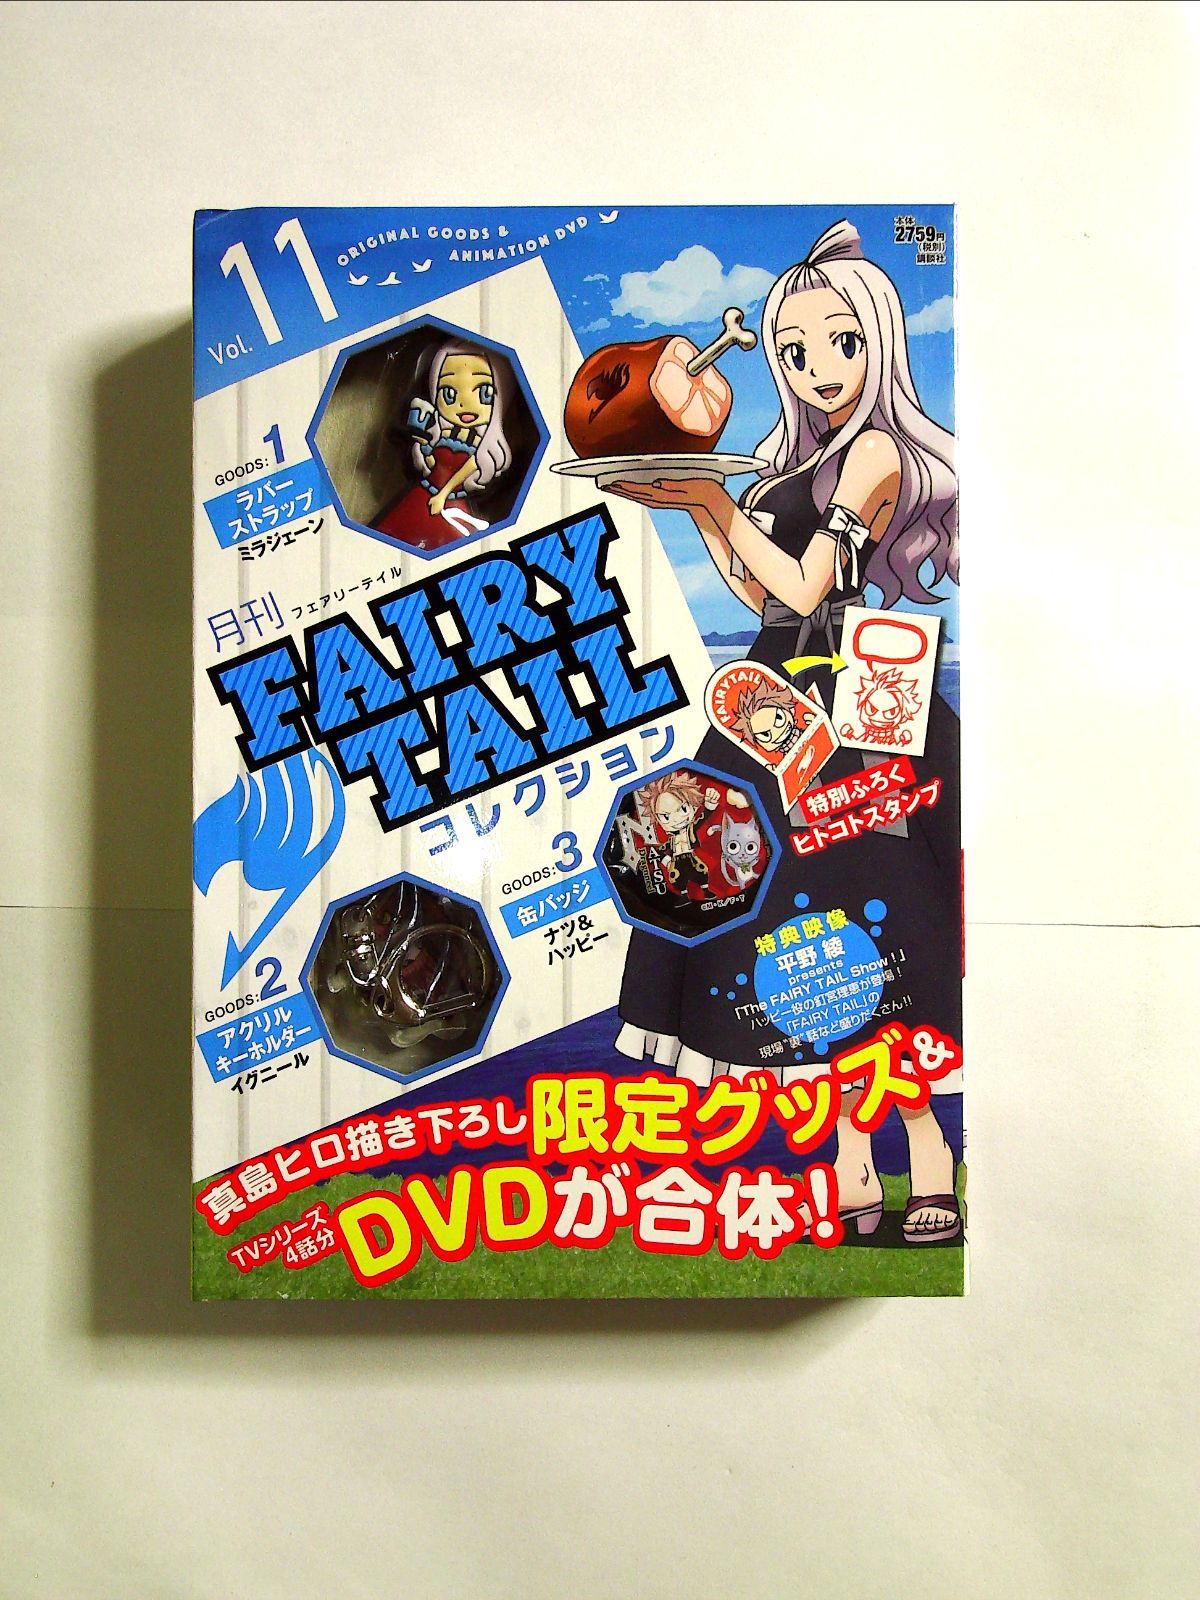 メール便可 2セットまで 月刊 FAIRY TAIL マガジン+月刊Fairy tail